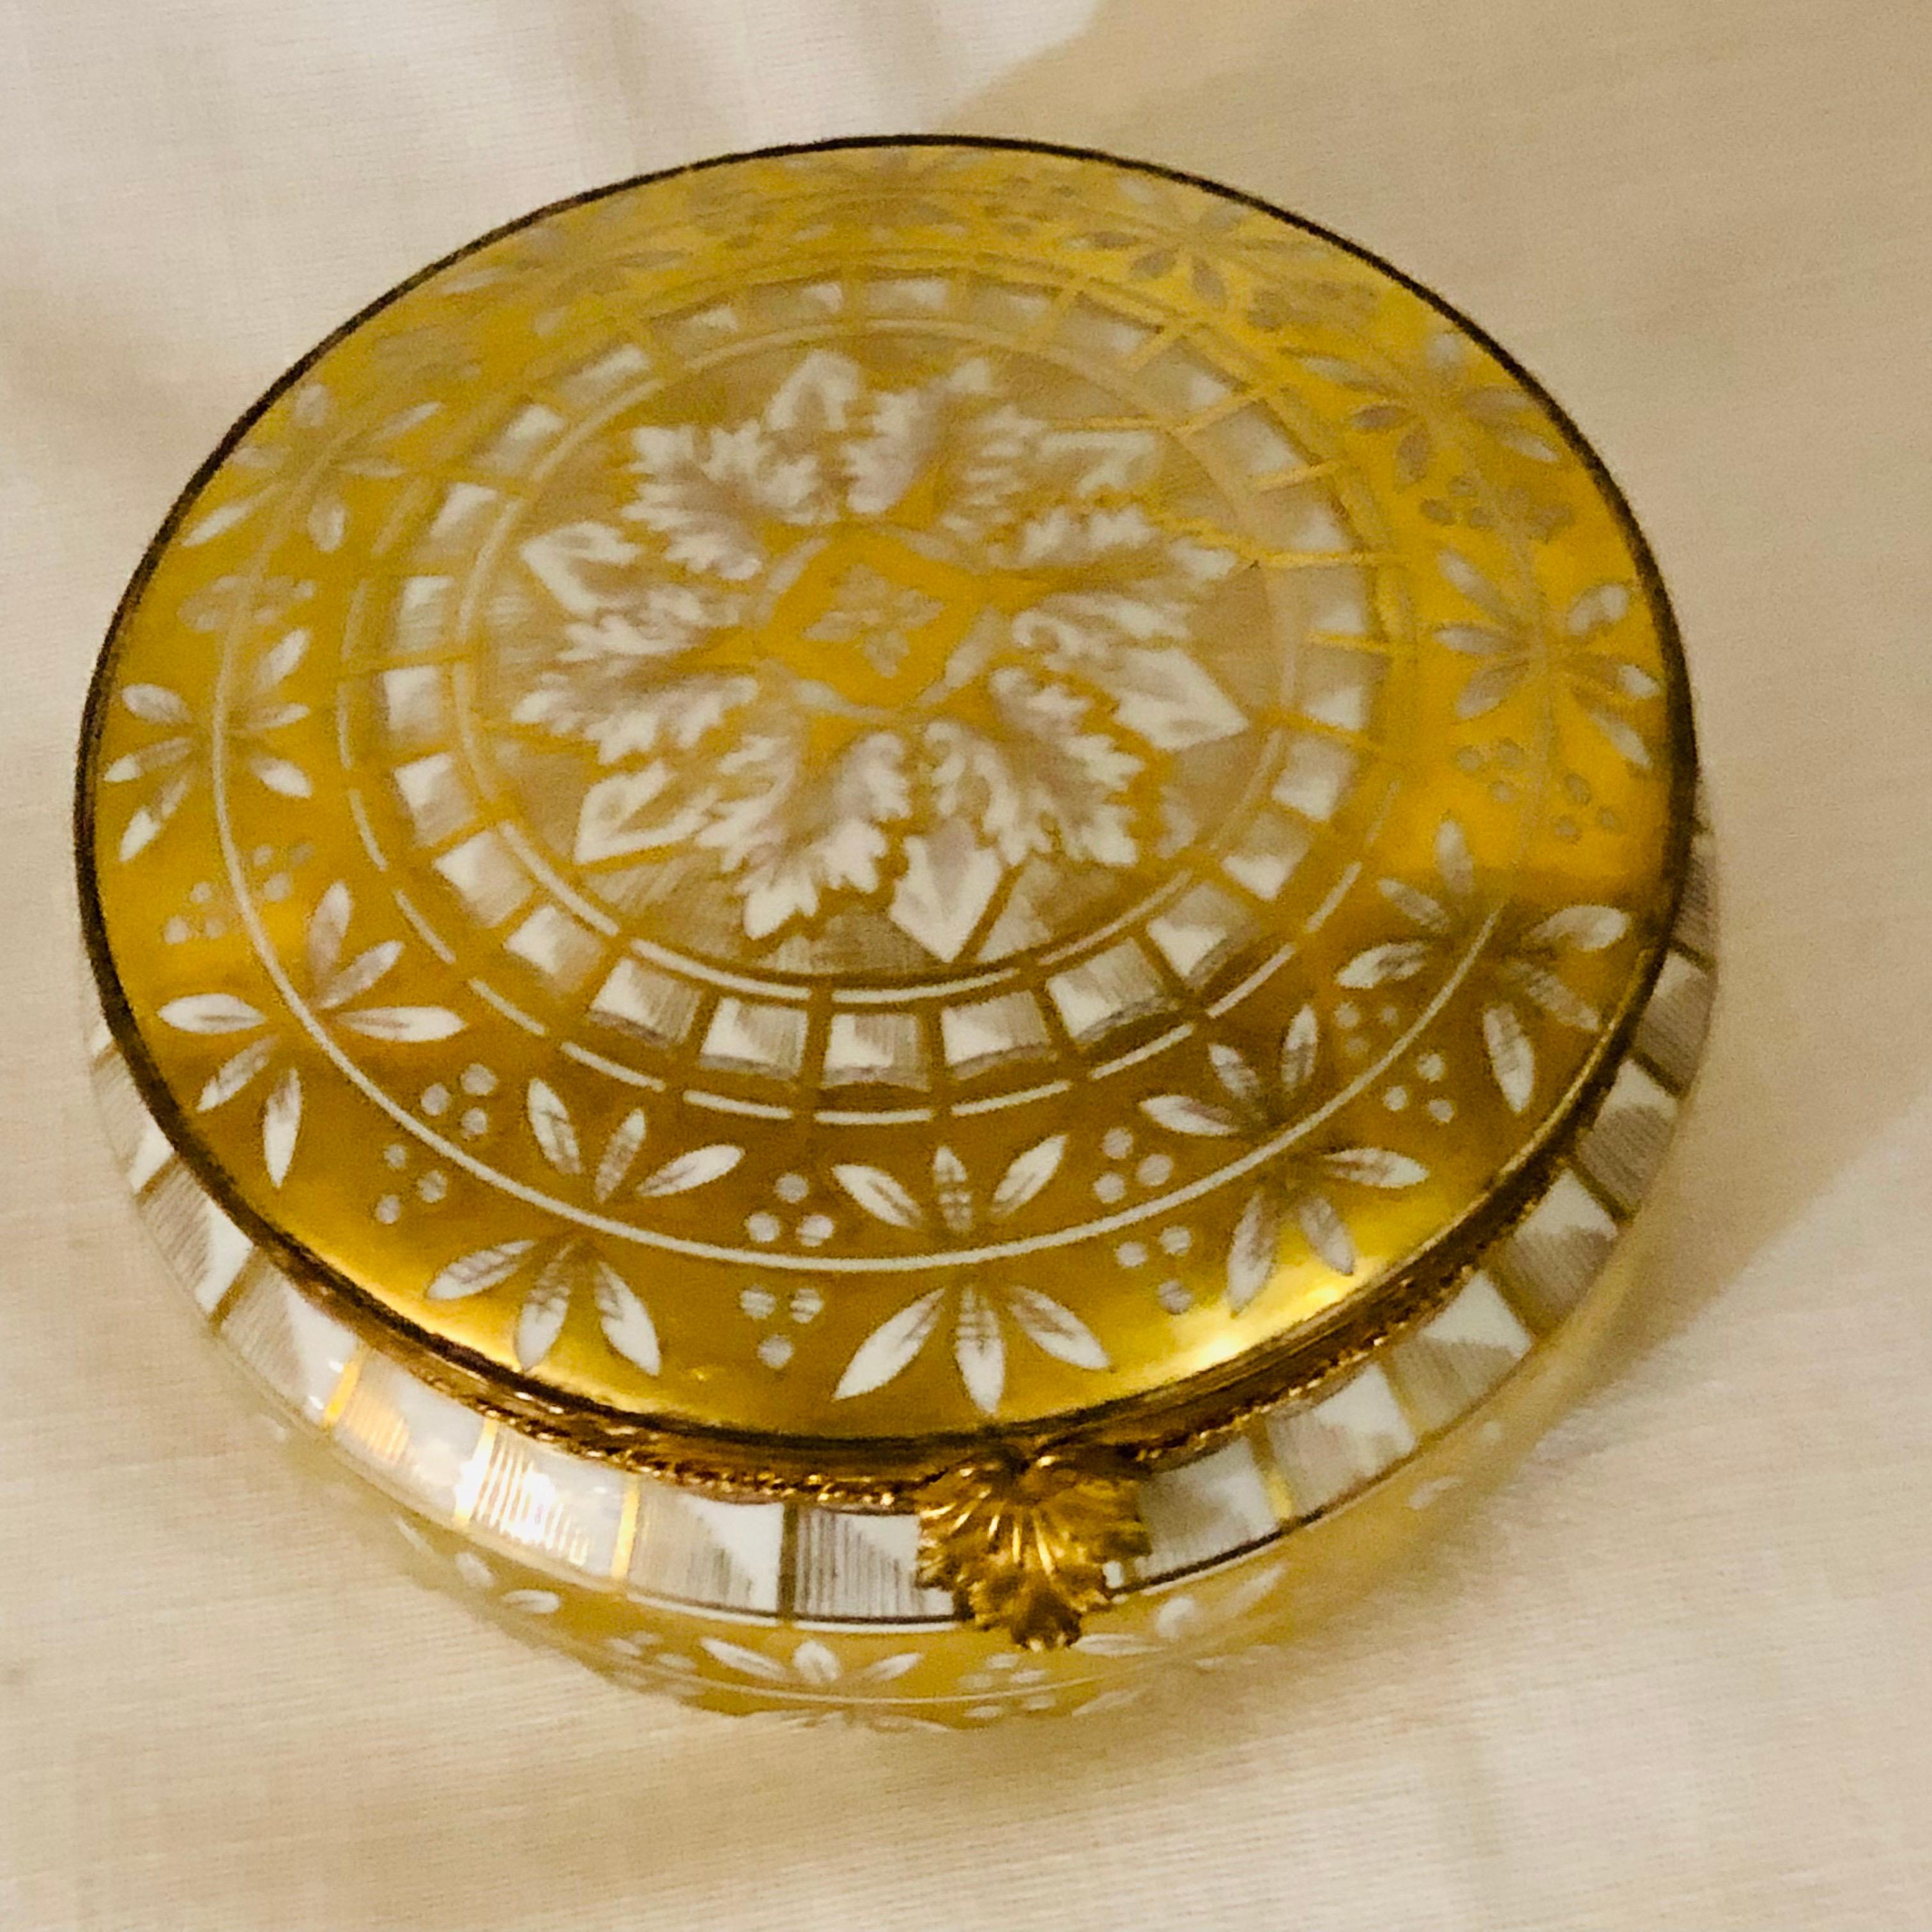 Il s'agit d'une superbe boîte ronde en porcelaine Le Tallec. Il est magnifiquement peint avec une décoration détaillée en or sur tous les côtés et sur le dessus. Il fait 15 cm de diamètre. Ce serait un endroit parfait pour garder vos petits bijoux